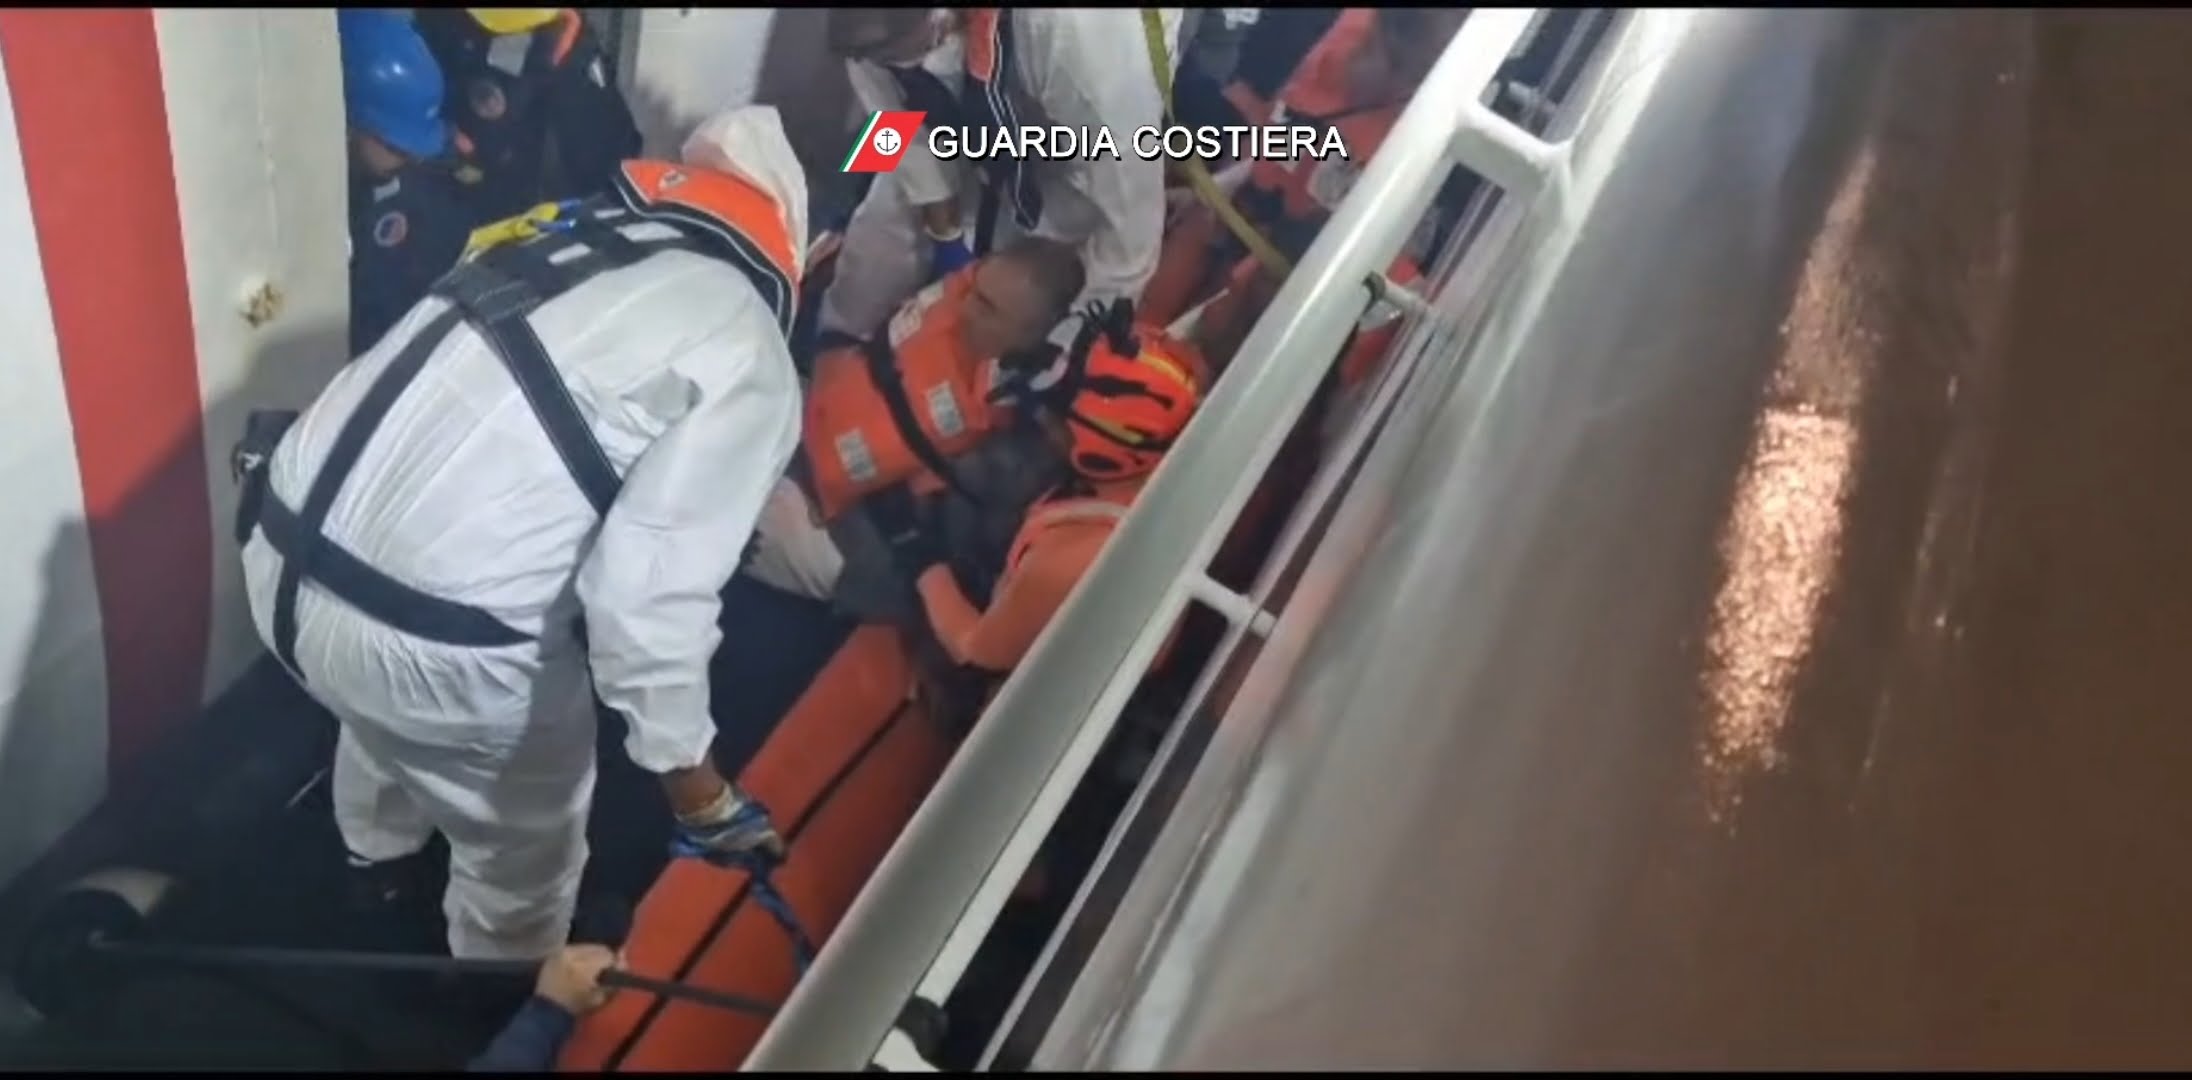 Paura a bordo del traghetto Cossyra: incendio In navigazione e passeggeri evacuati